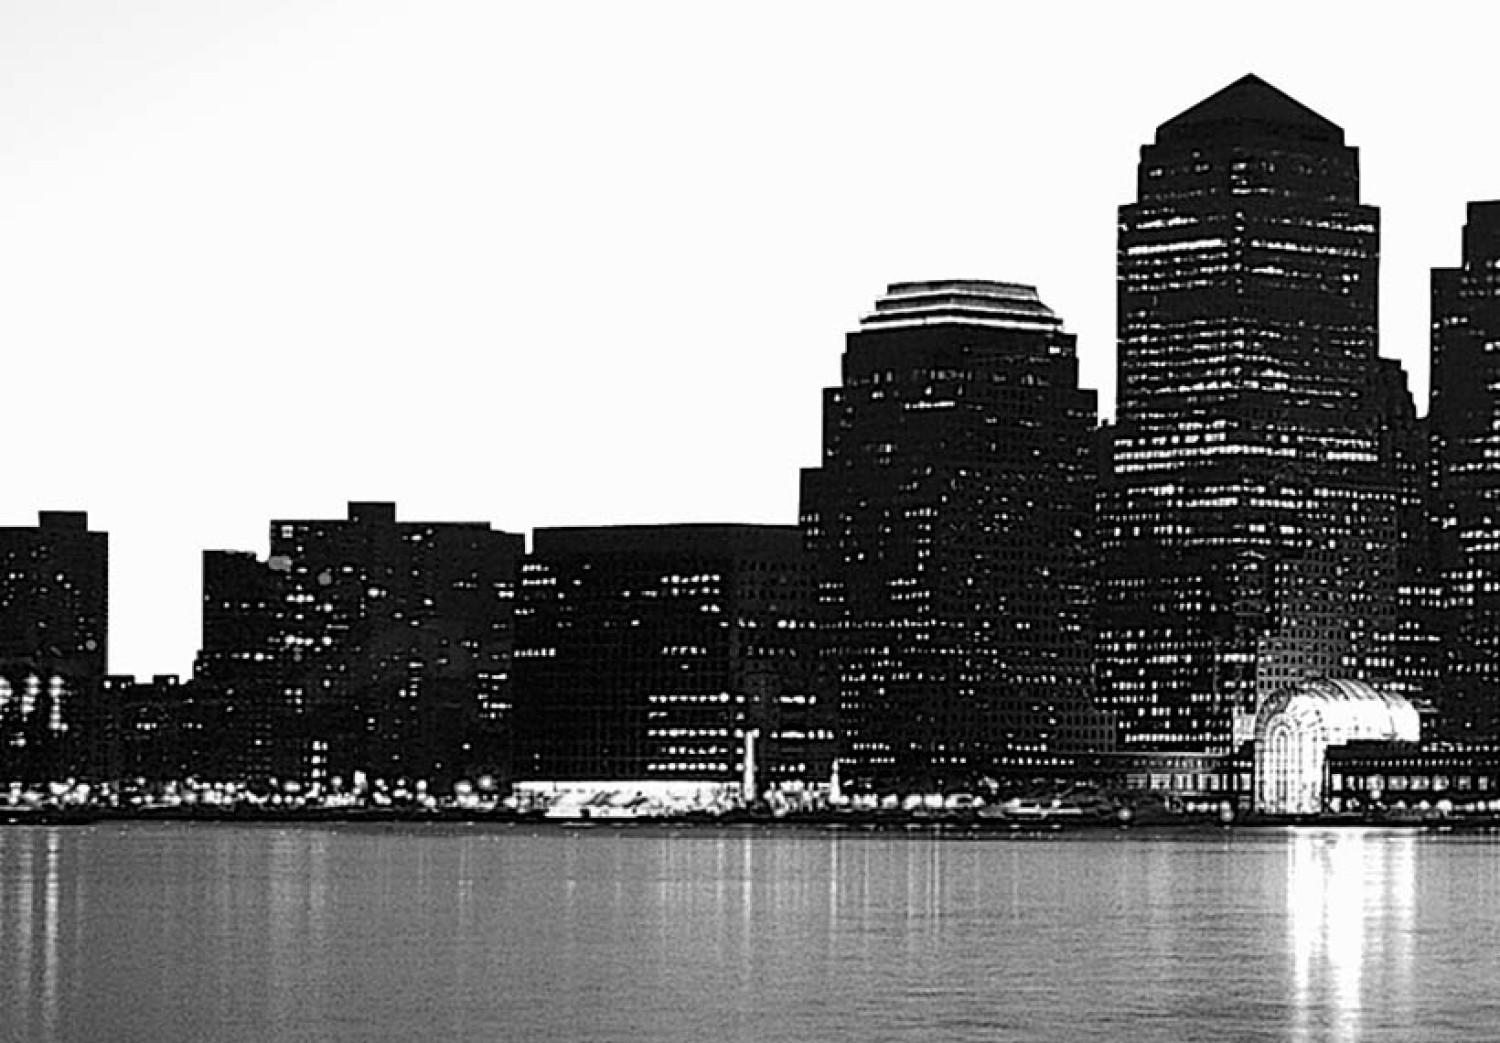 Cuadro decorativo World Trade Center en blanco y negro 